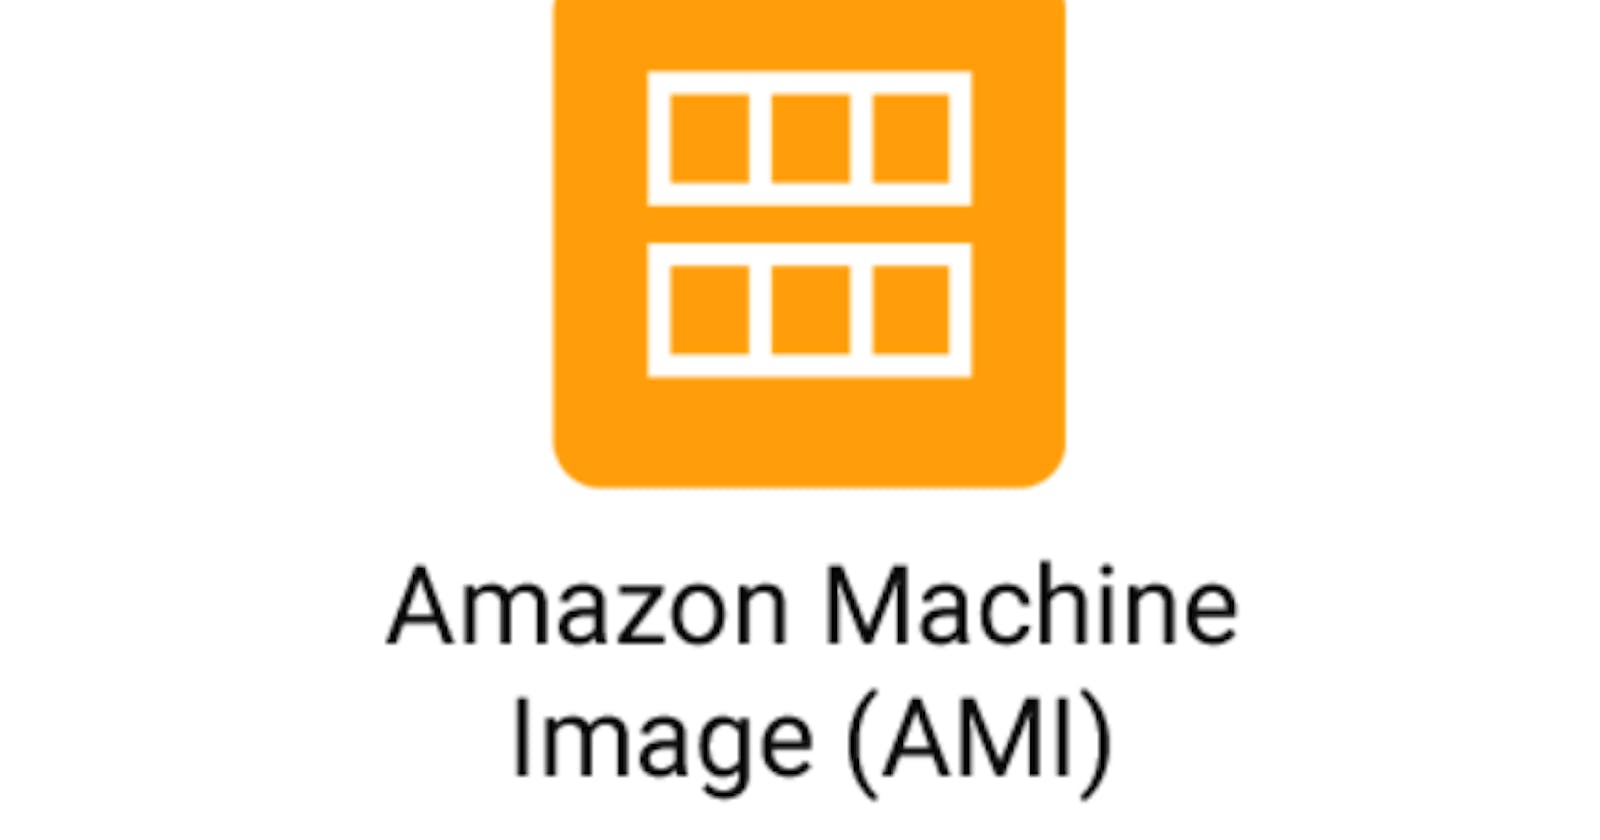 AWS AMI- Amazon Machine Image